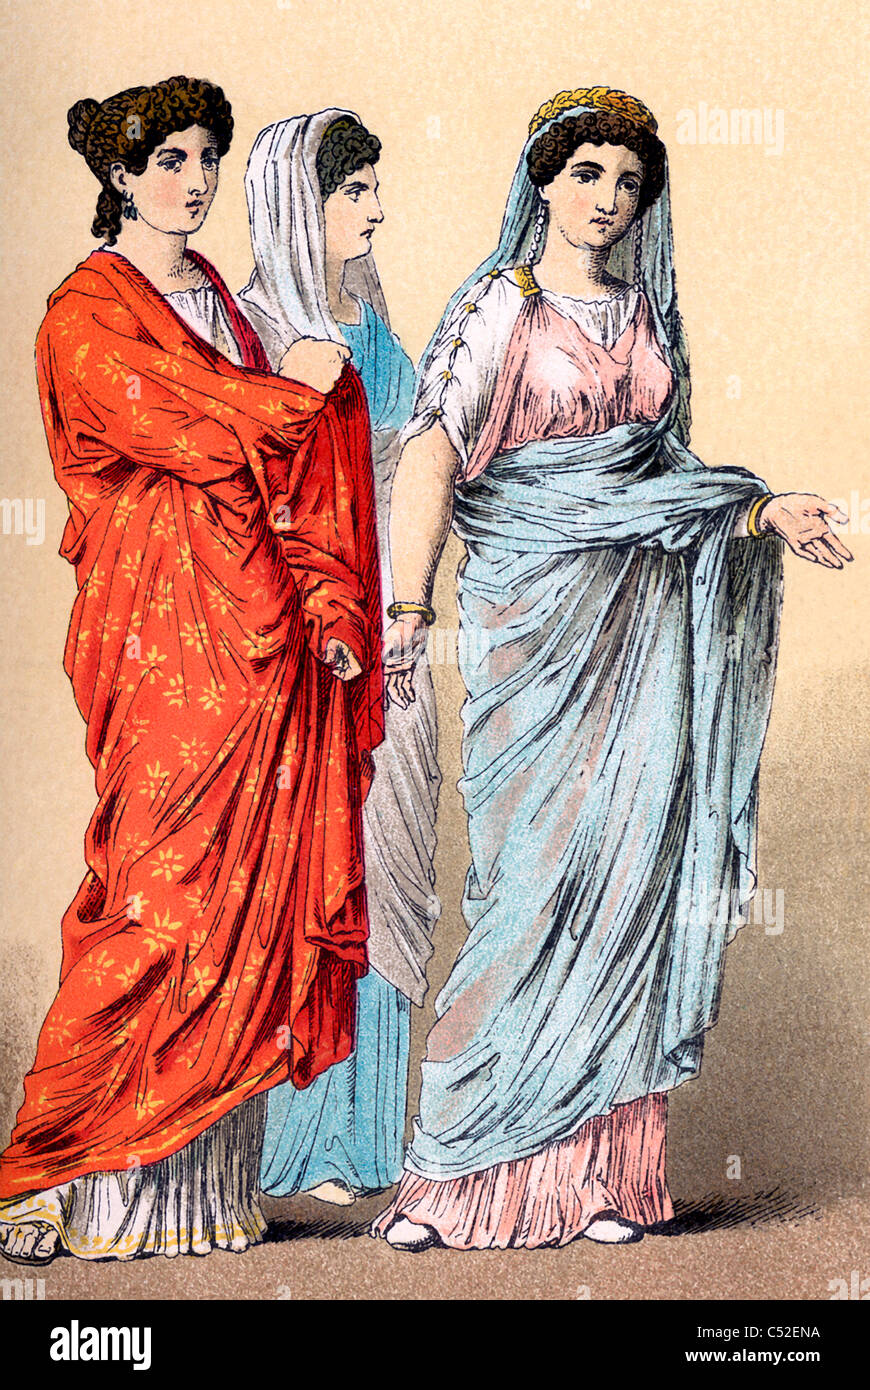 Robe de femme romaine à la fin de l'époque impériale et républicaine (autour de 100 avant J.-C. à 100 après J.-C.). Remarque les coiffures. Banque D'Images